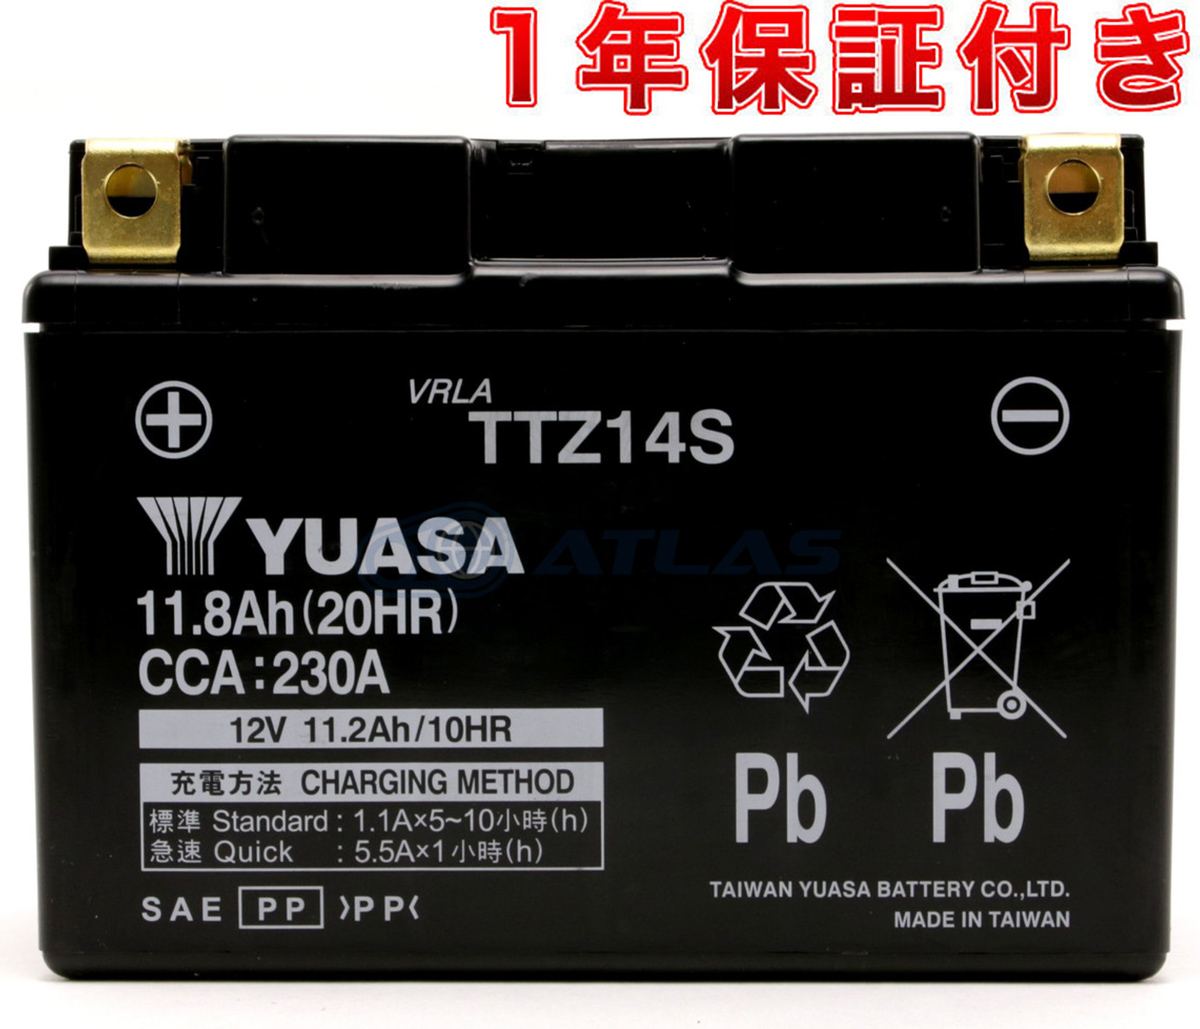 コスパ最強台湾ユアサバッテリー LINE友だちクーポン発行中 バイク バッテリー台湾YUASA TTZ14S 液入り充電済み 互換 公式ショップ 1年保証付き FTZ14S YTZ14S GTZ14S 送料無料カード決済可能 DTZ14S